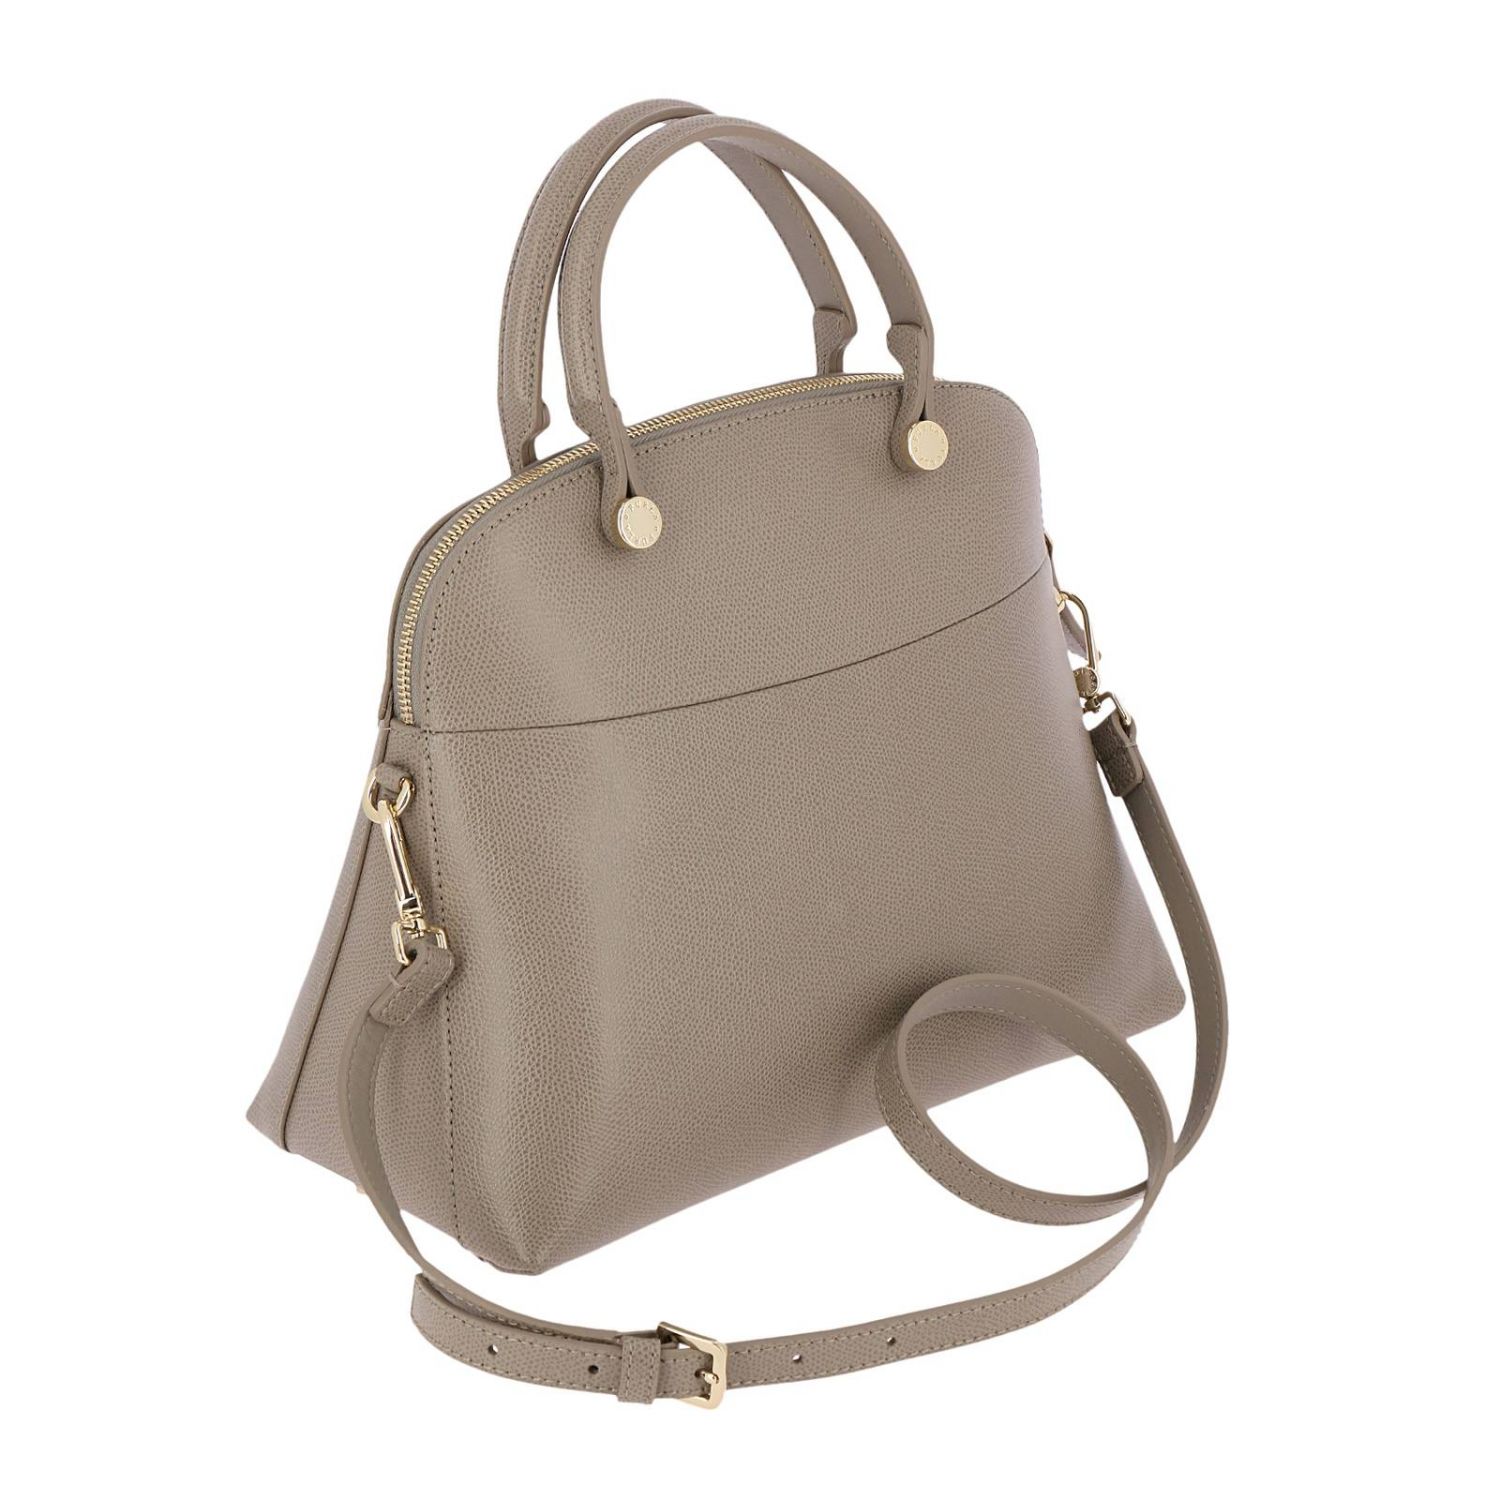 Furla Outlet: Shoulder bag women - Sand | Handbag Furla 851235 BFK9 ...